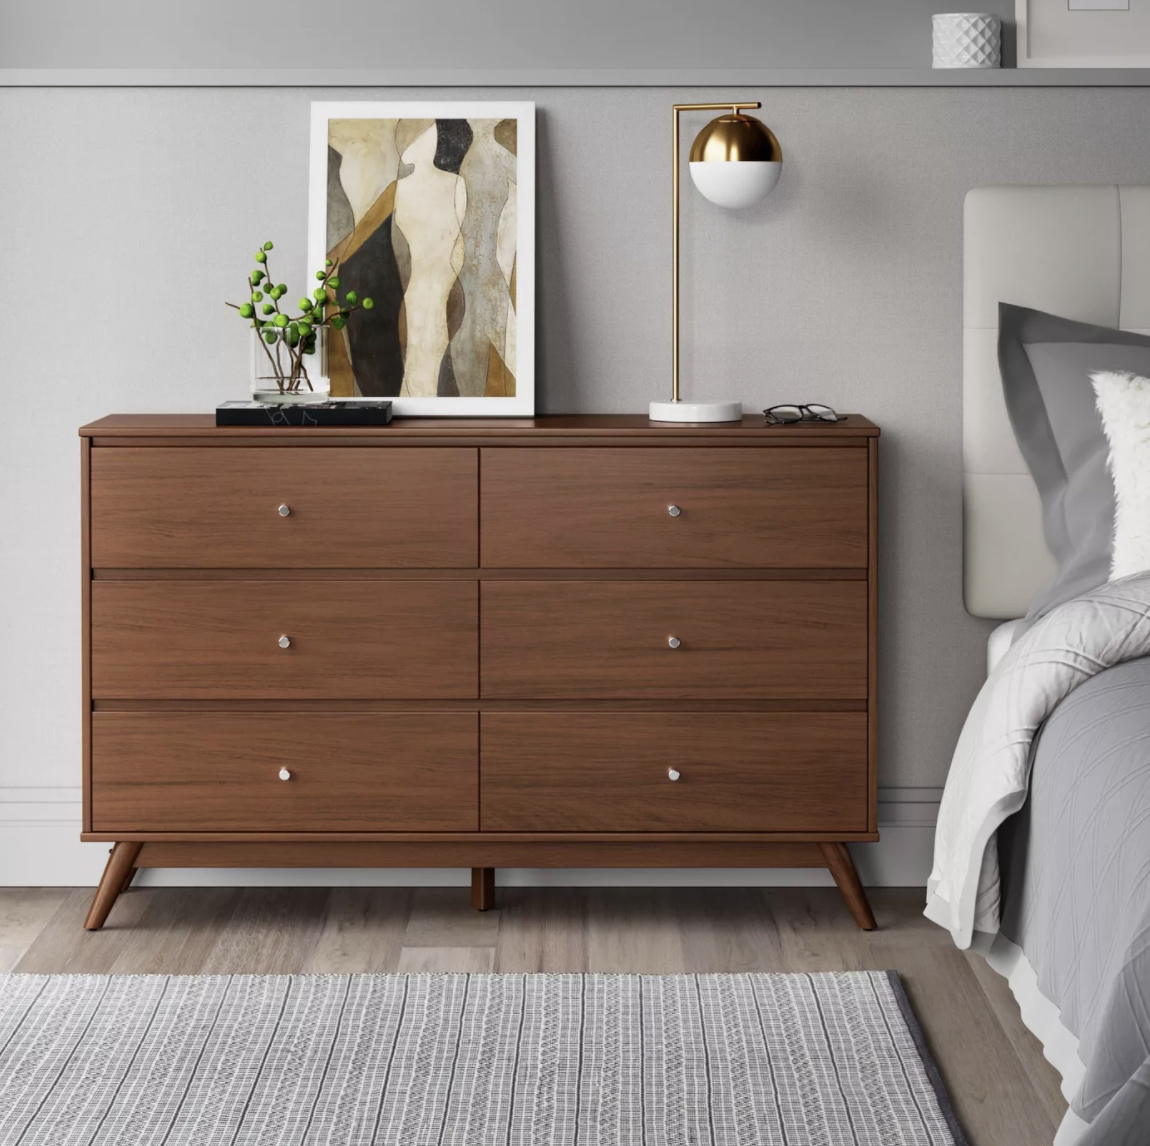 the mid-century modern brown dresser